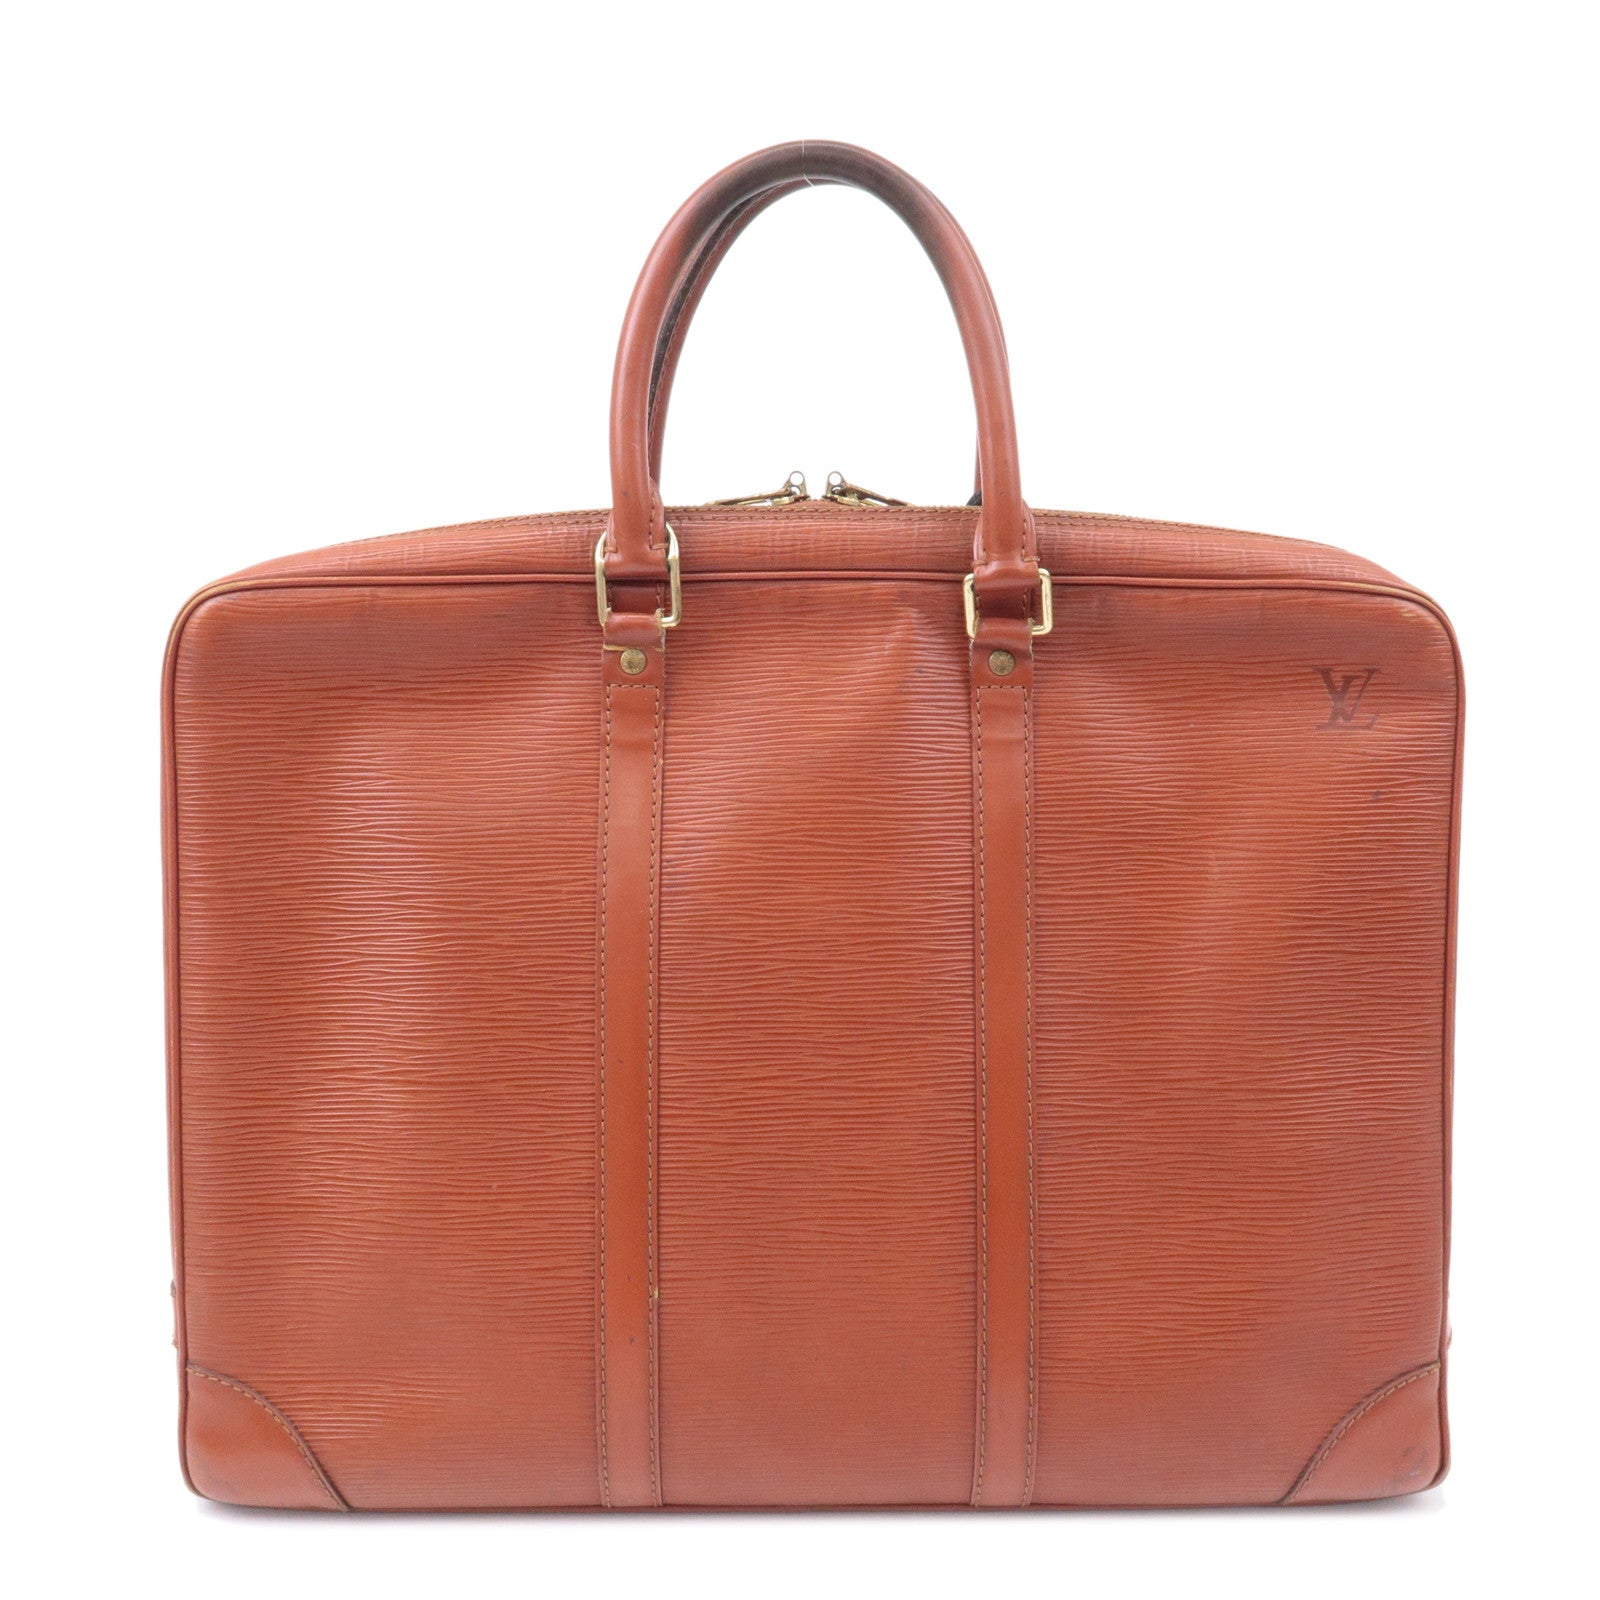 Authentic Louis Vuitton Monogram Business Bag Porte Documents